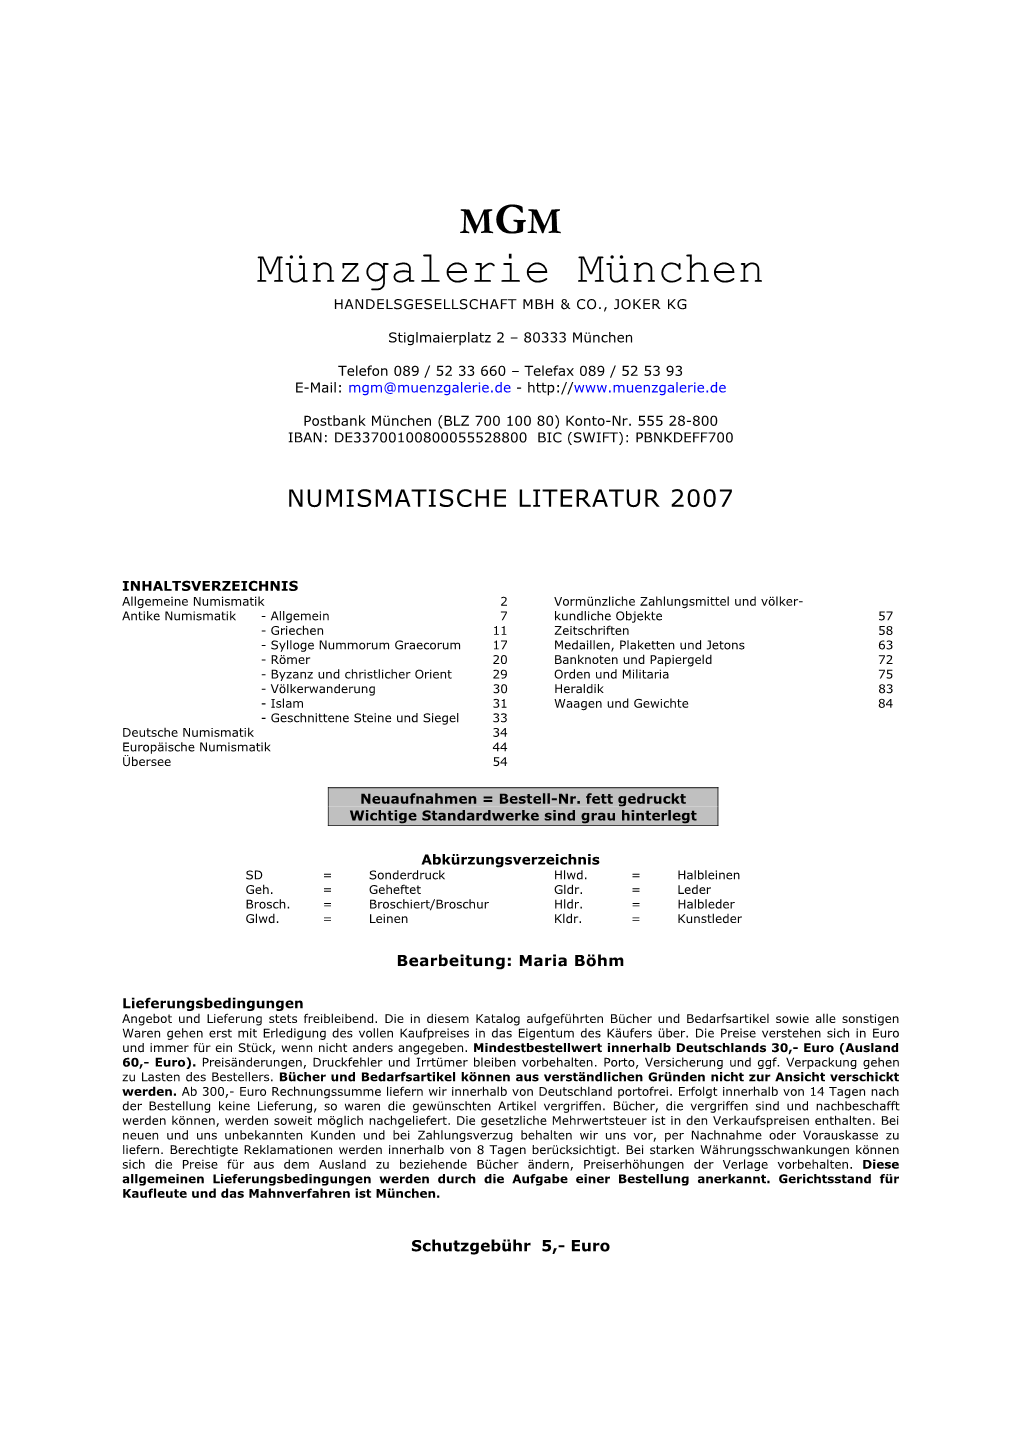 Münzgalerie München HANDELSGESELLSCHAFT MBH & CO., JOKER KG